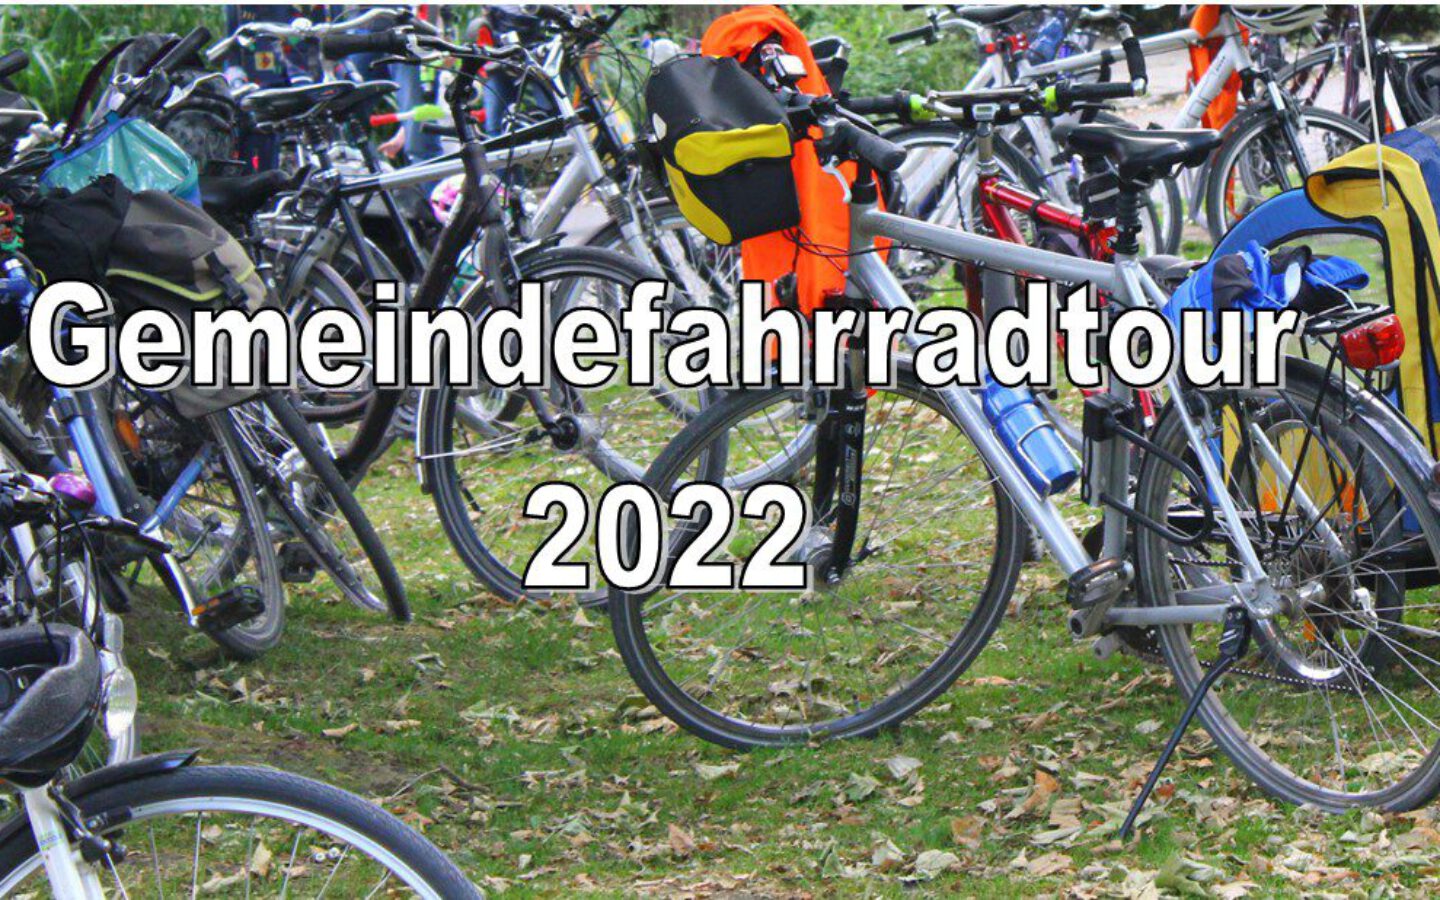 Gemeindefahrradtour 2022